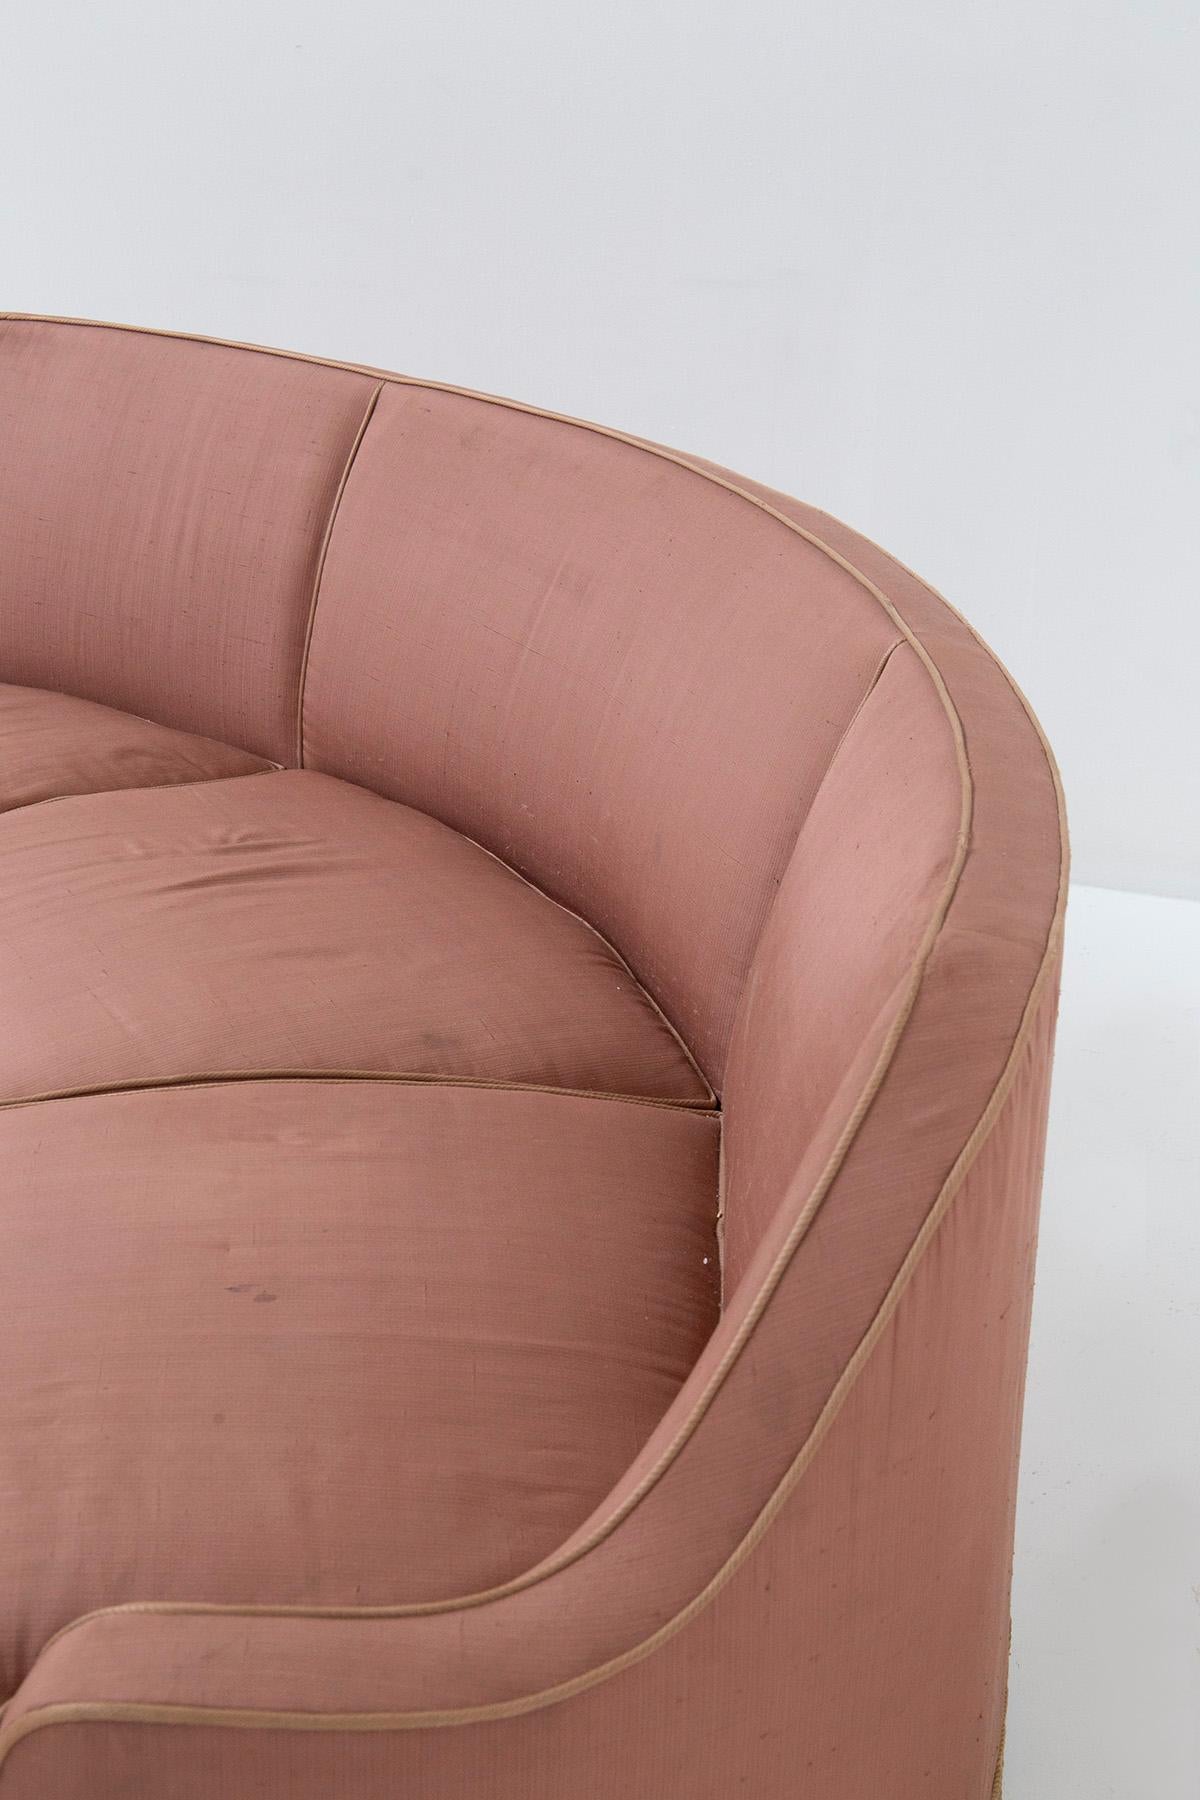 Italian three-seater sofa in pink fabric attributed to Gio Ponti 6